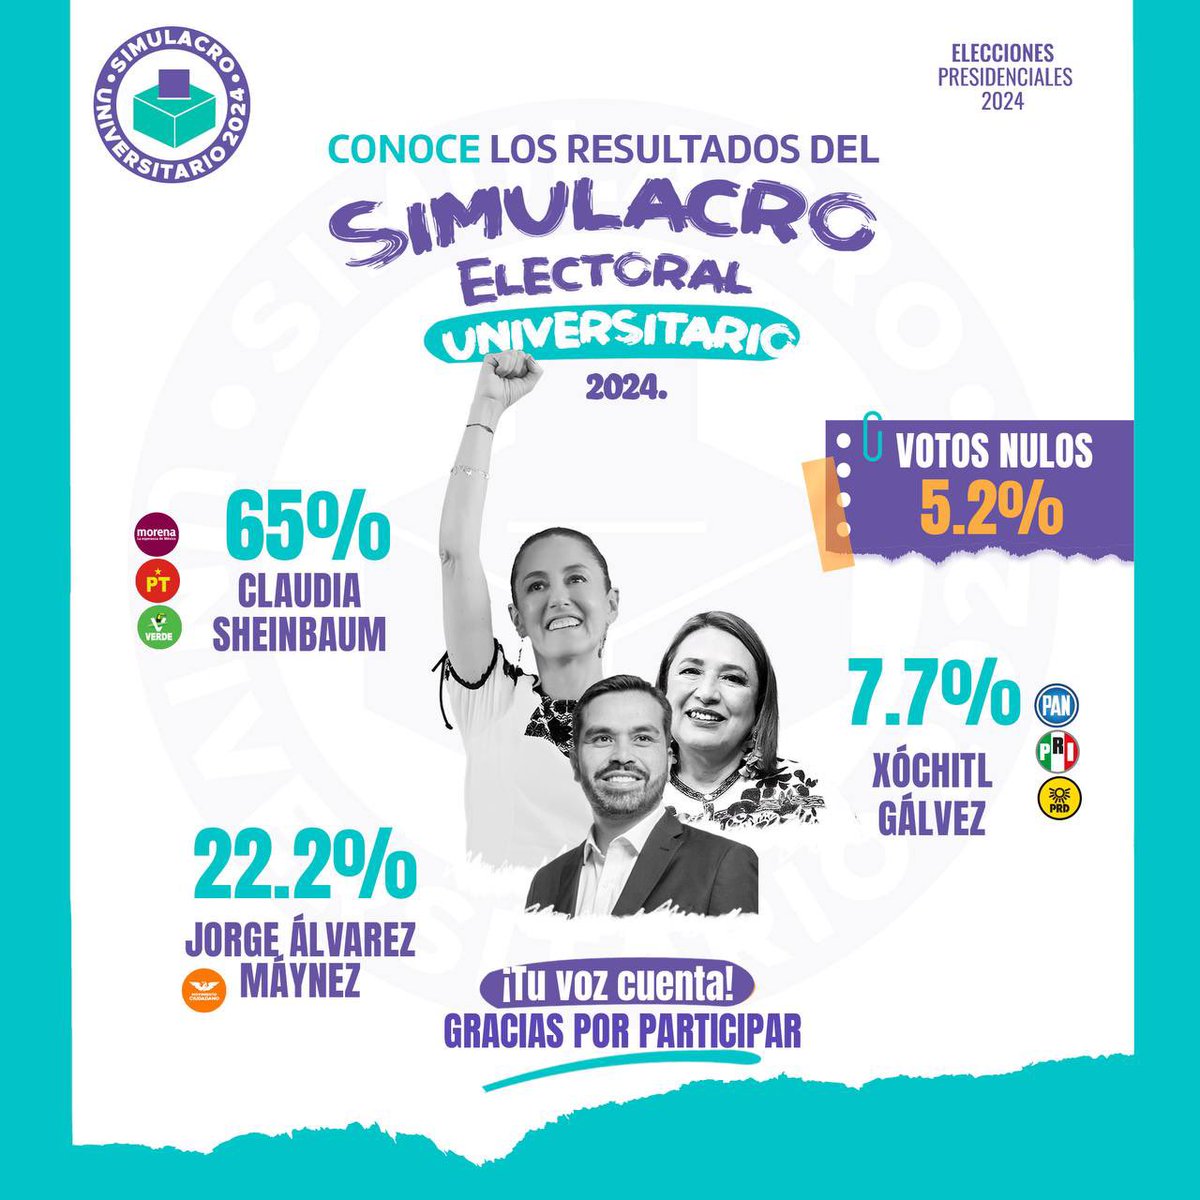 Gana @Claudiashein con 65 por ciento de los votos y en segundo lugar @AlvarezMaynez con el 22 por ciento y @XochitlGalvez obtuvo 7.7 por ciento en el #SimulacroUniversitario2024